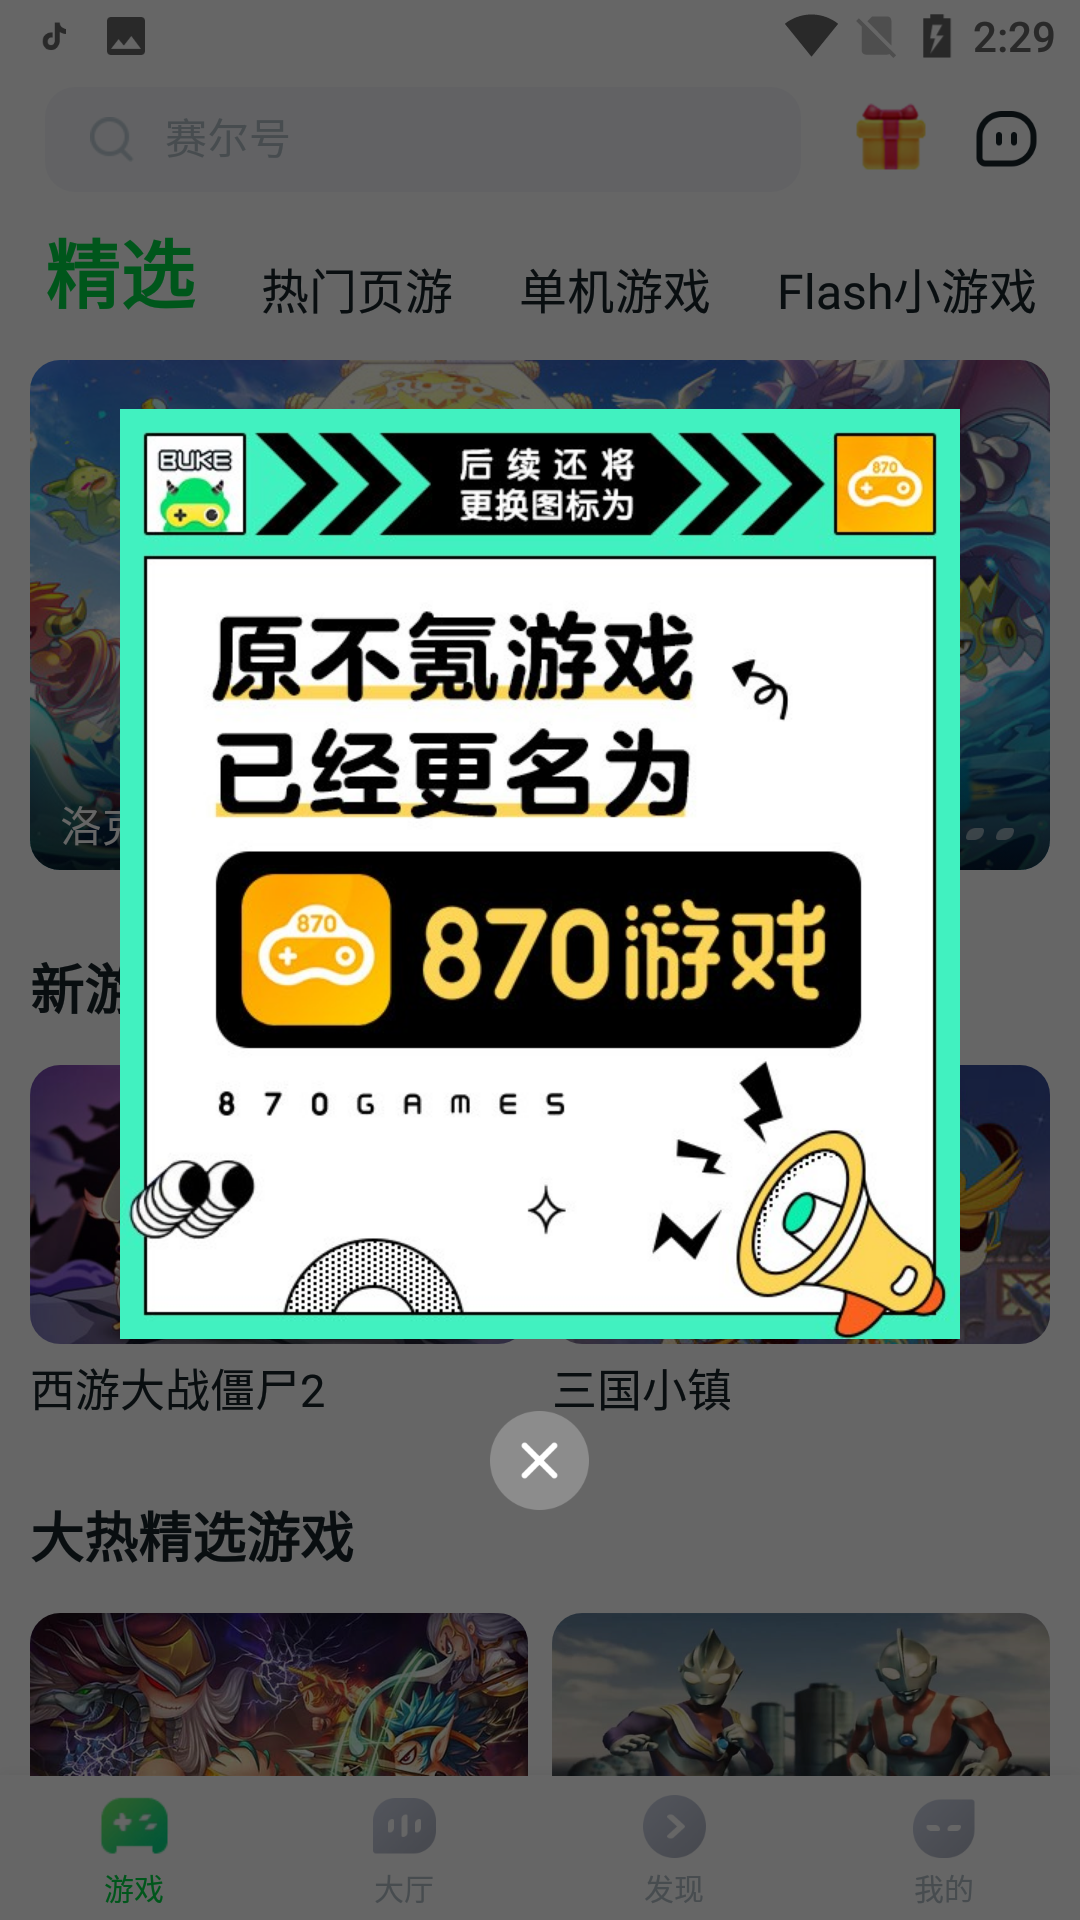 870游戏盒子正版手机软件app截图